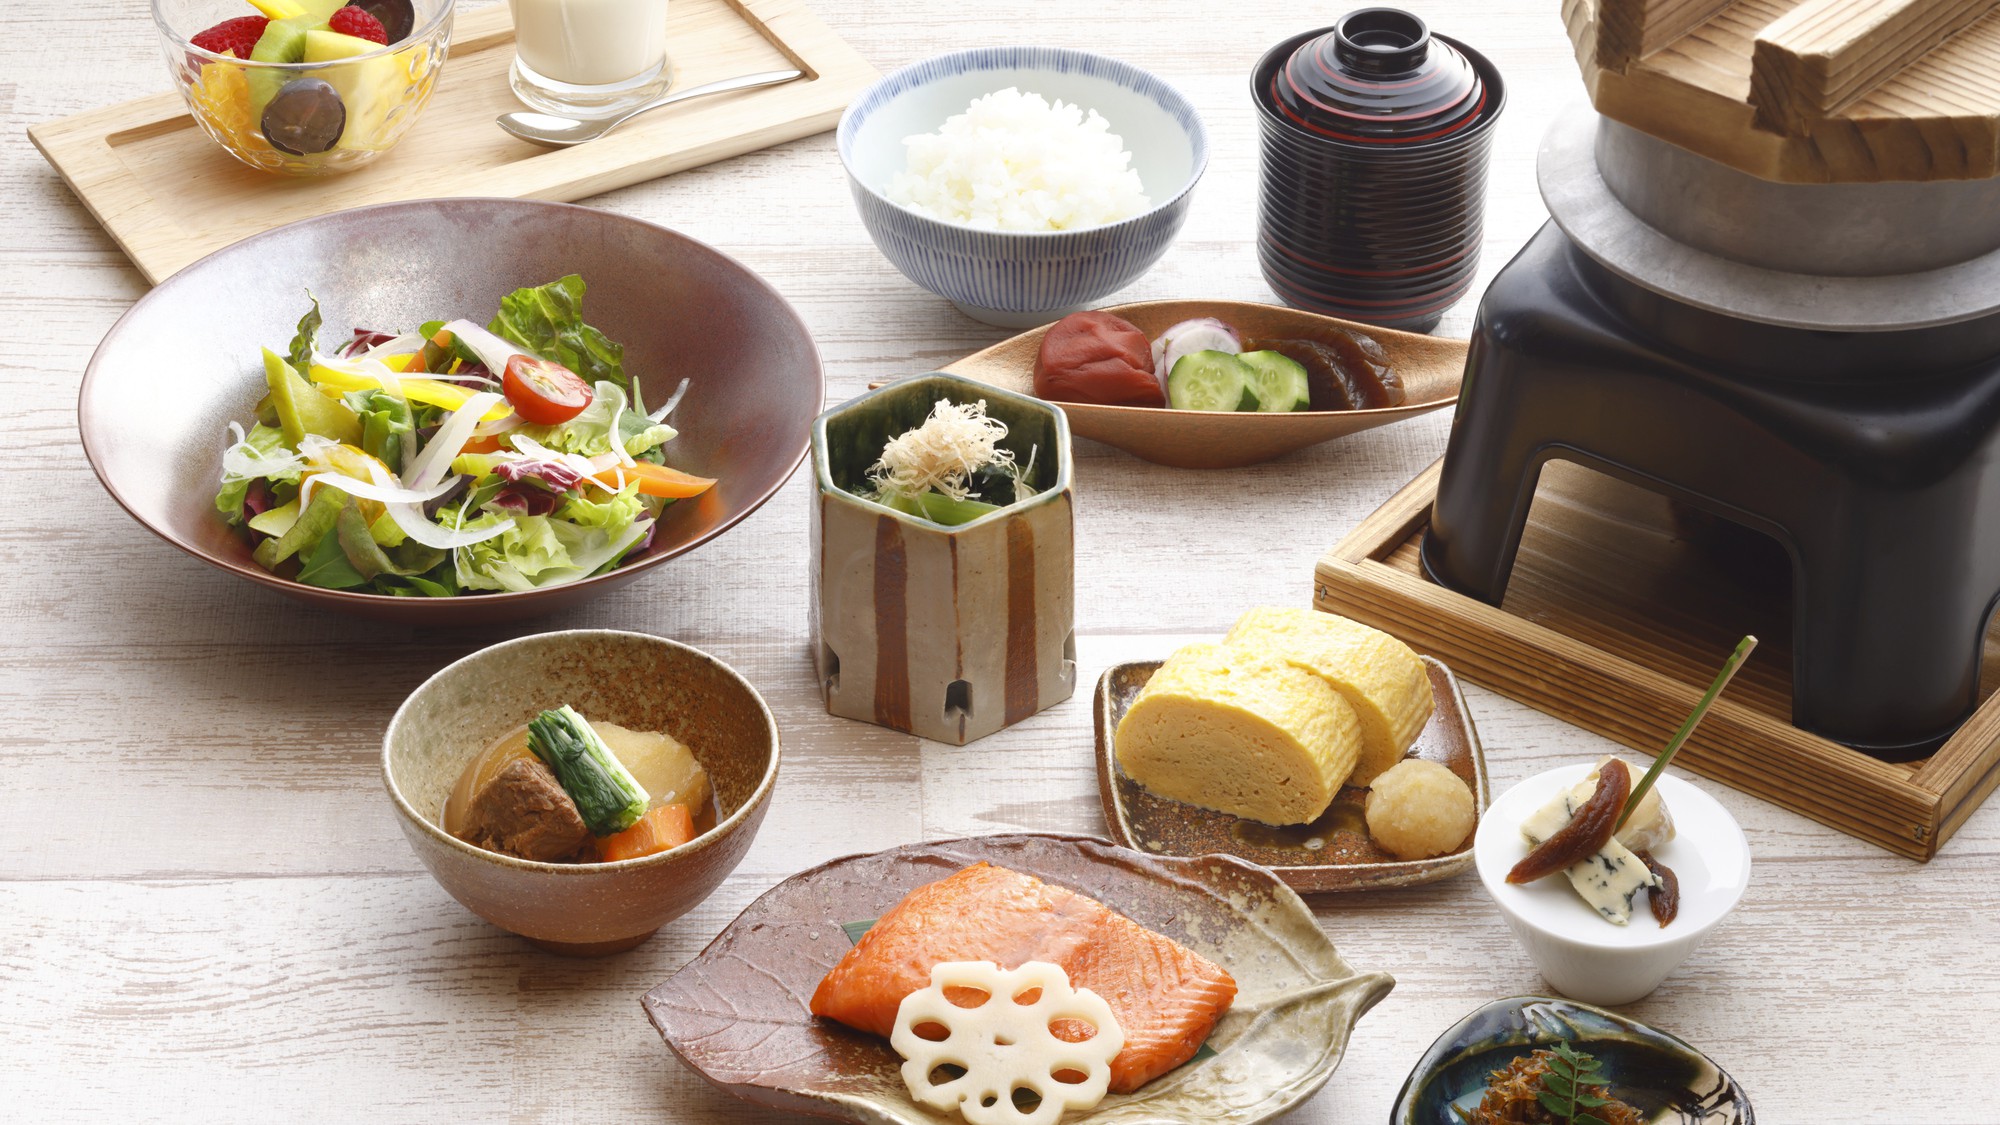 滋賀県産の食材をふんだんに使用した、クラブフロア特別朝食